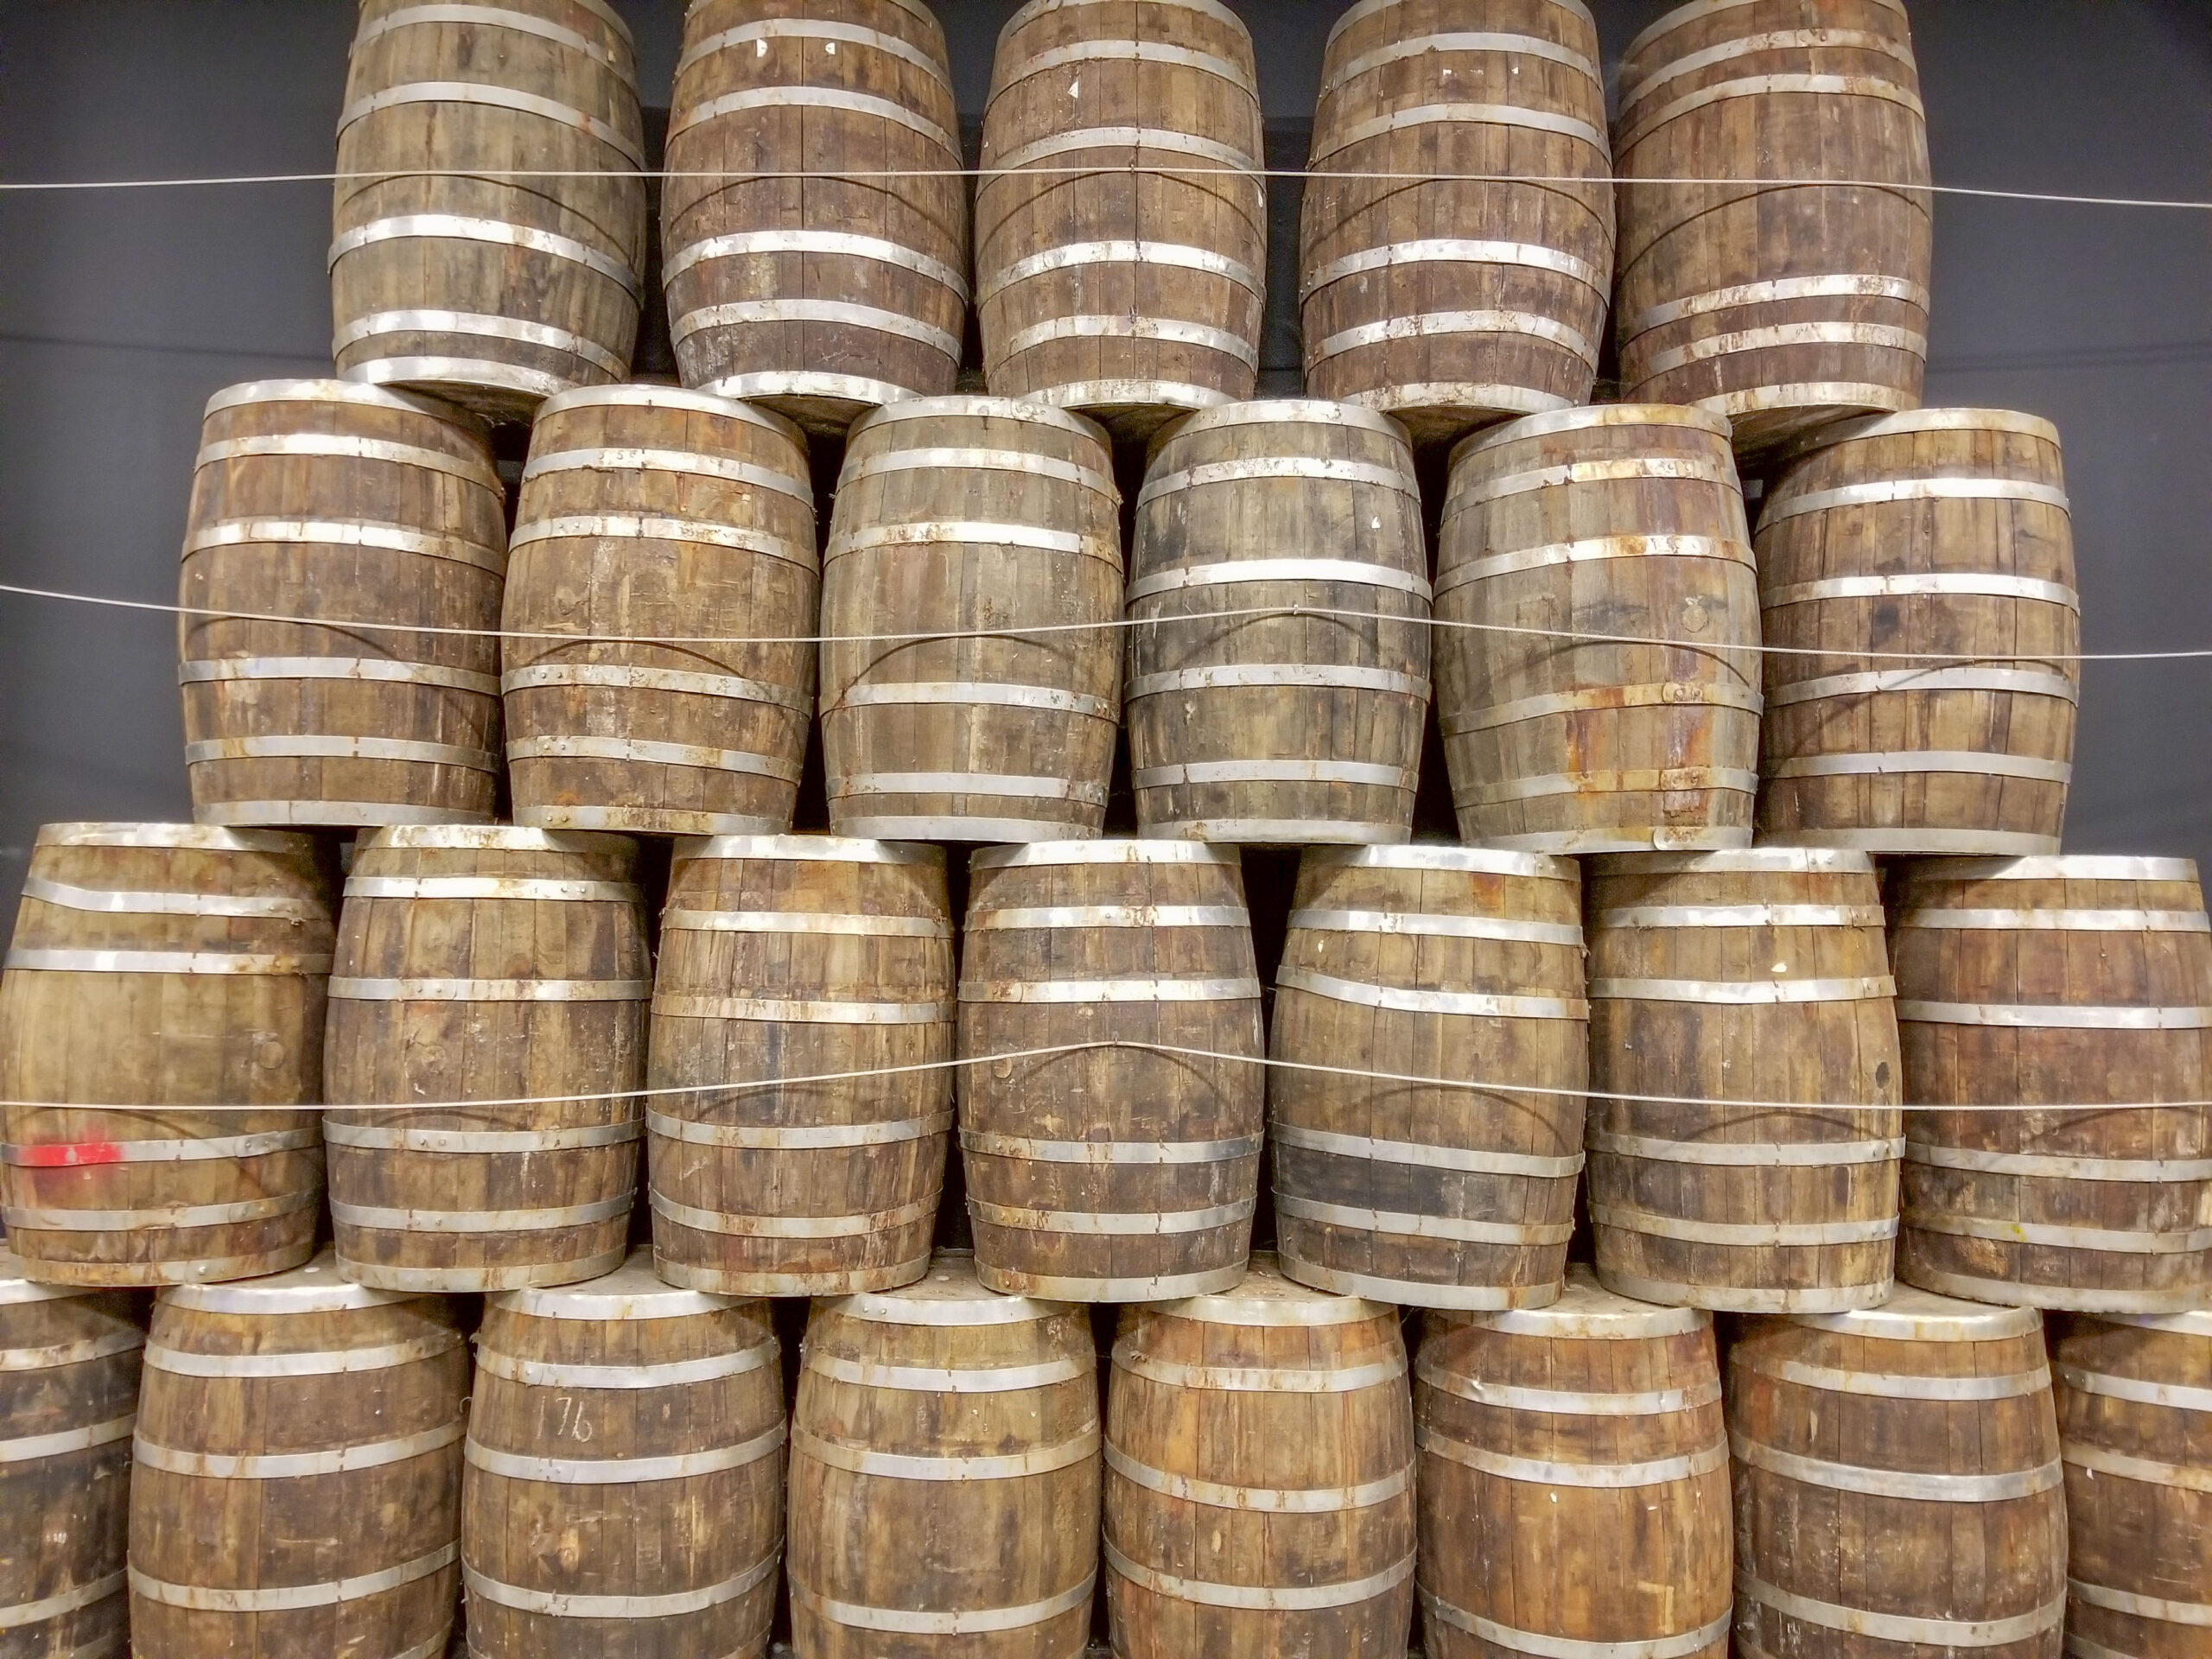 Barrels in the barrel warehouse